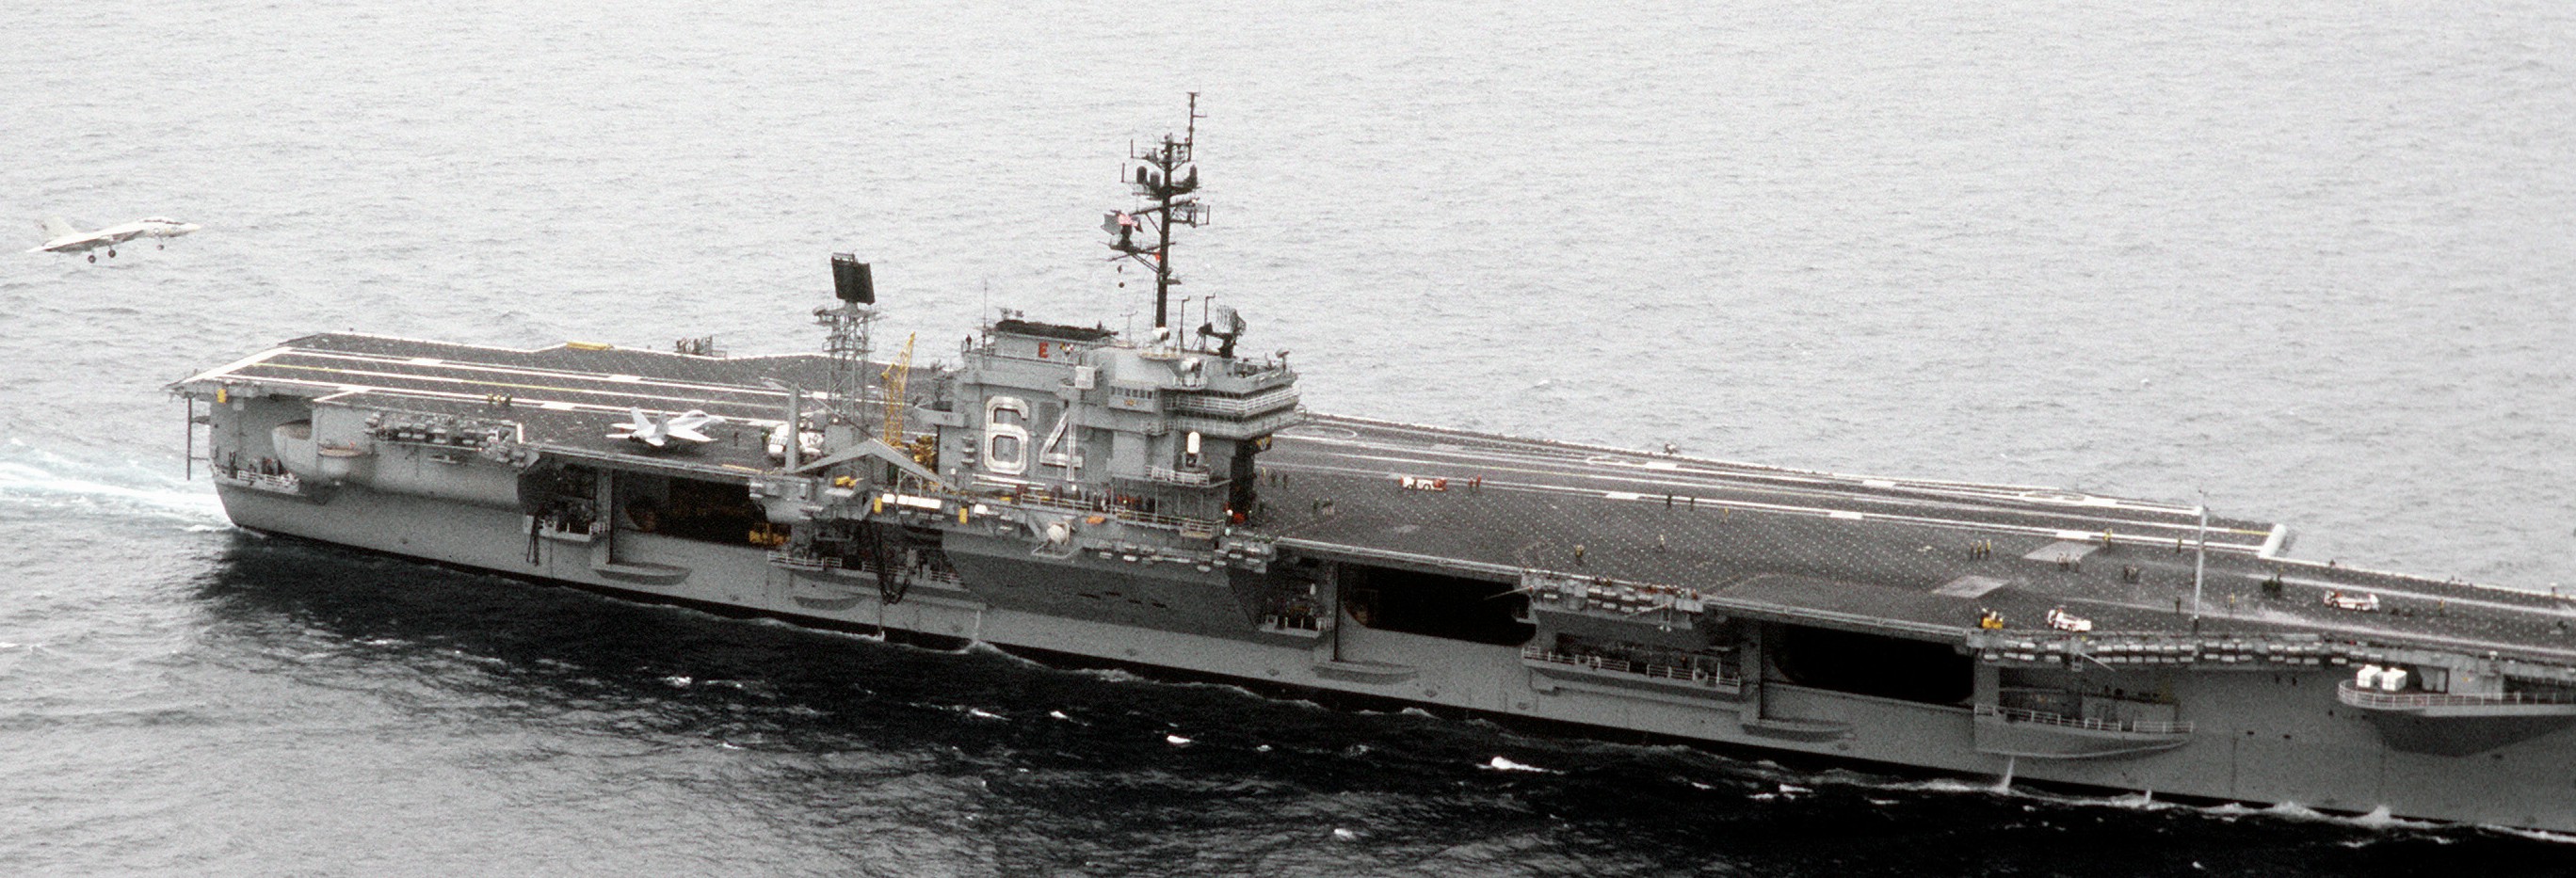 cv-64 uss constellation kitty hawk class aircraft carrier us navy 89